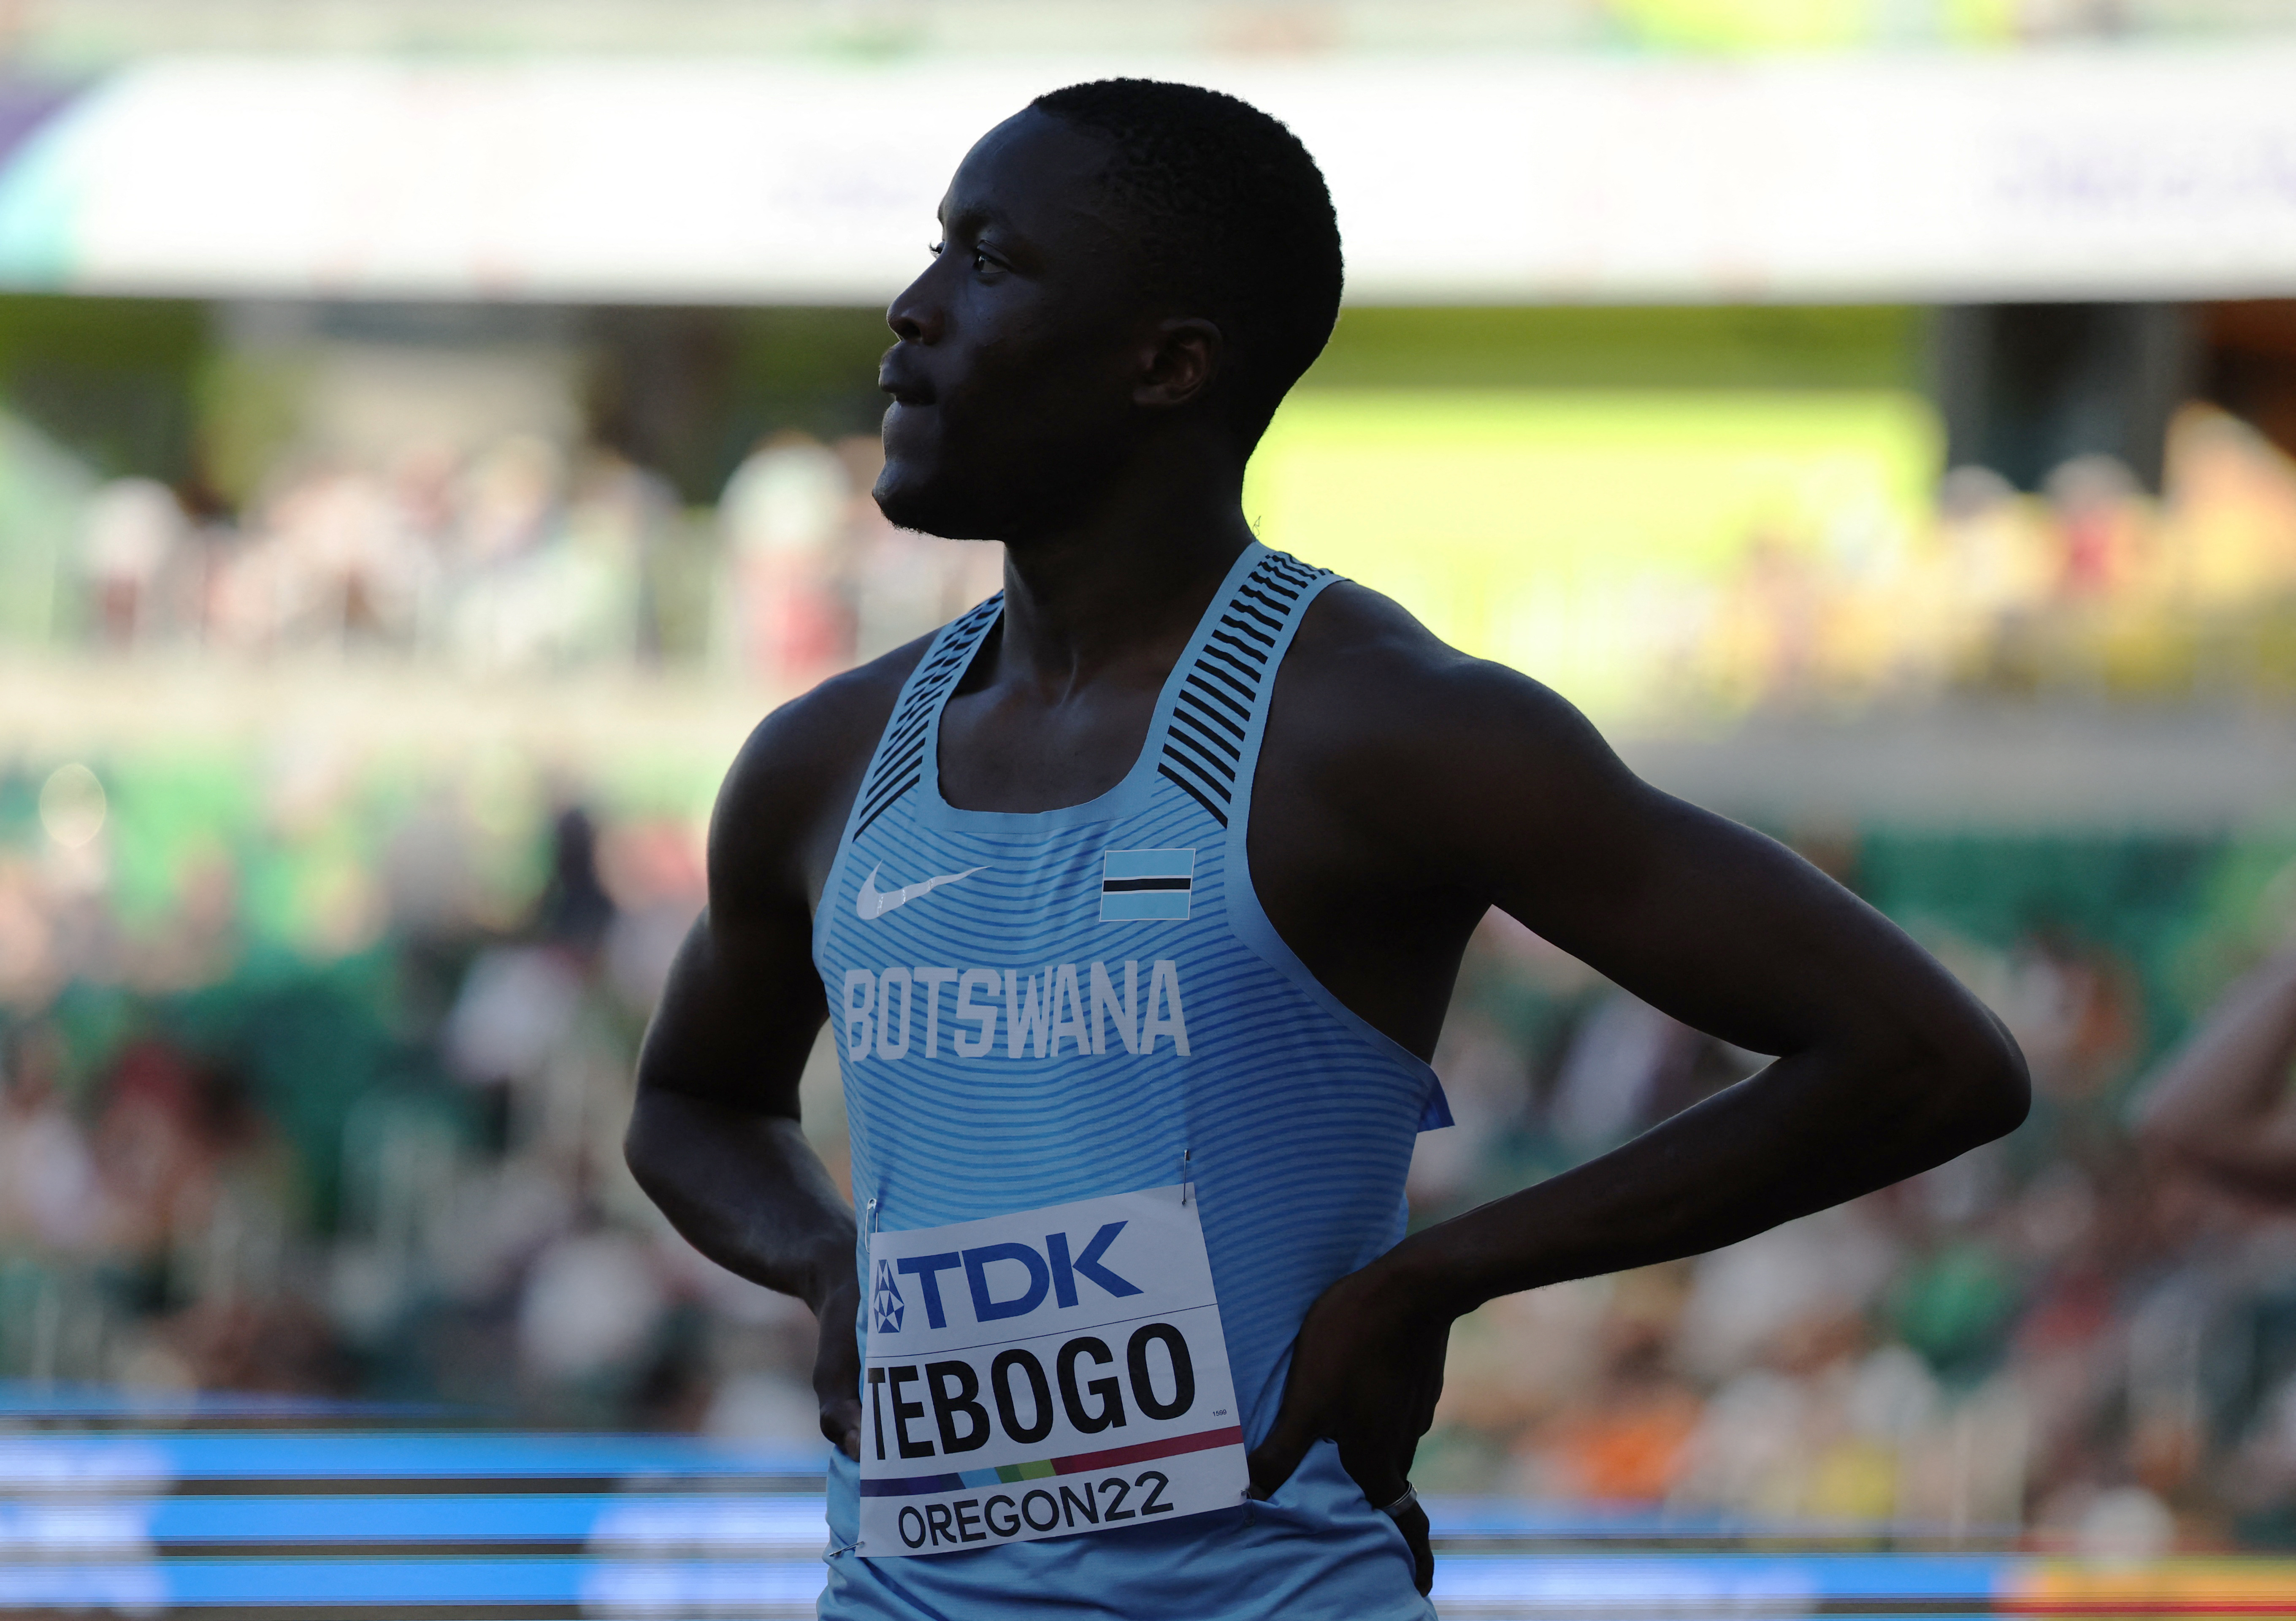 Tebogo viene de competir en el Mundial de atletismo de mayores (REUTERS/Lucy Nicholson)